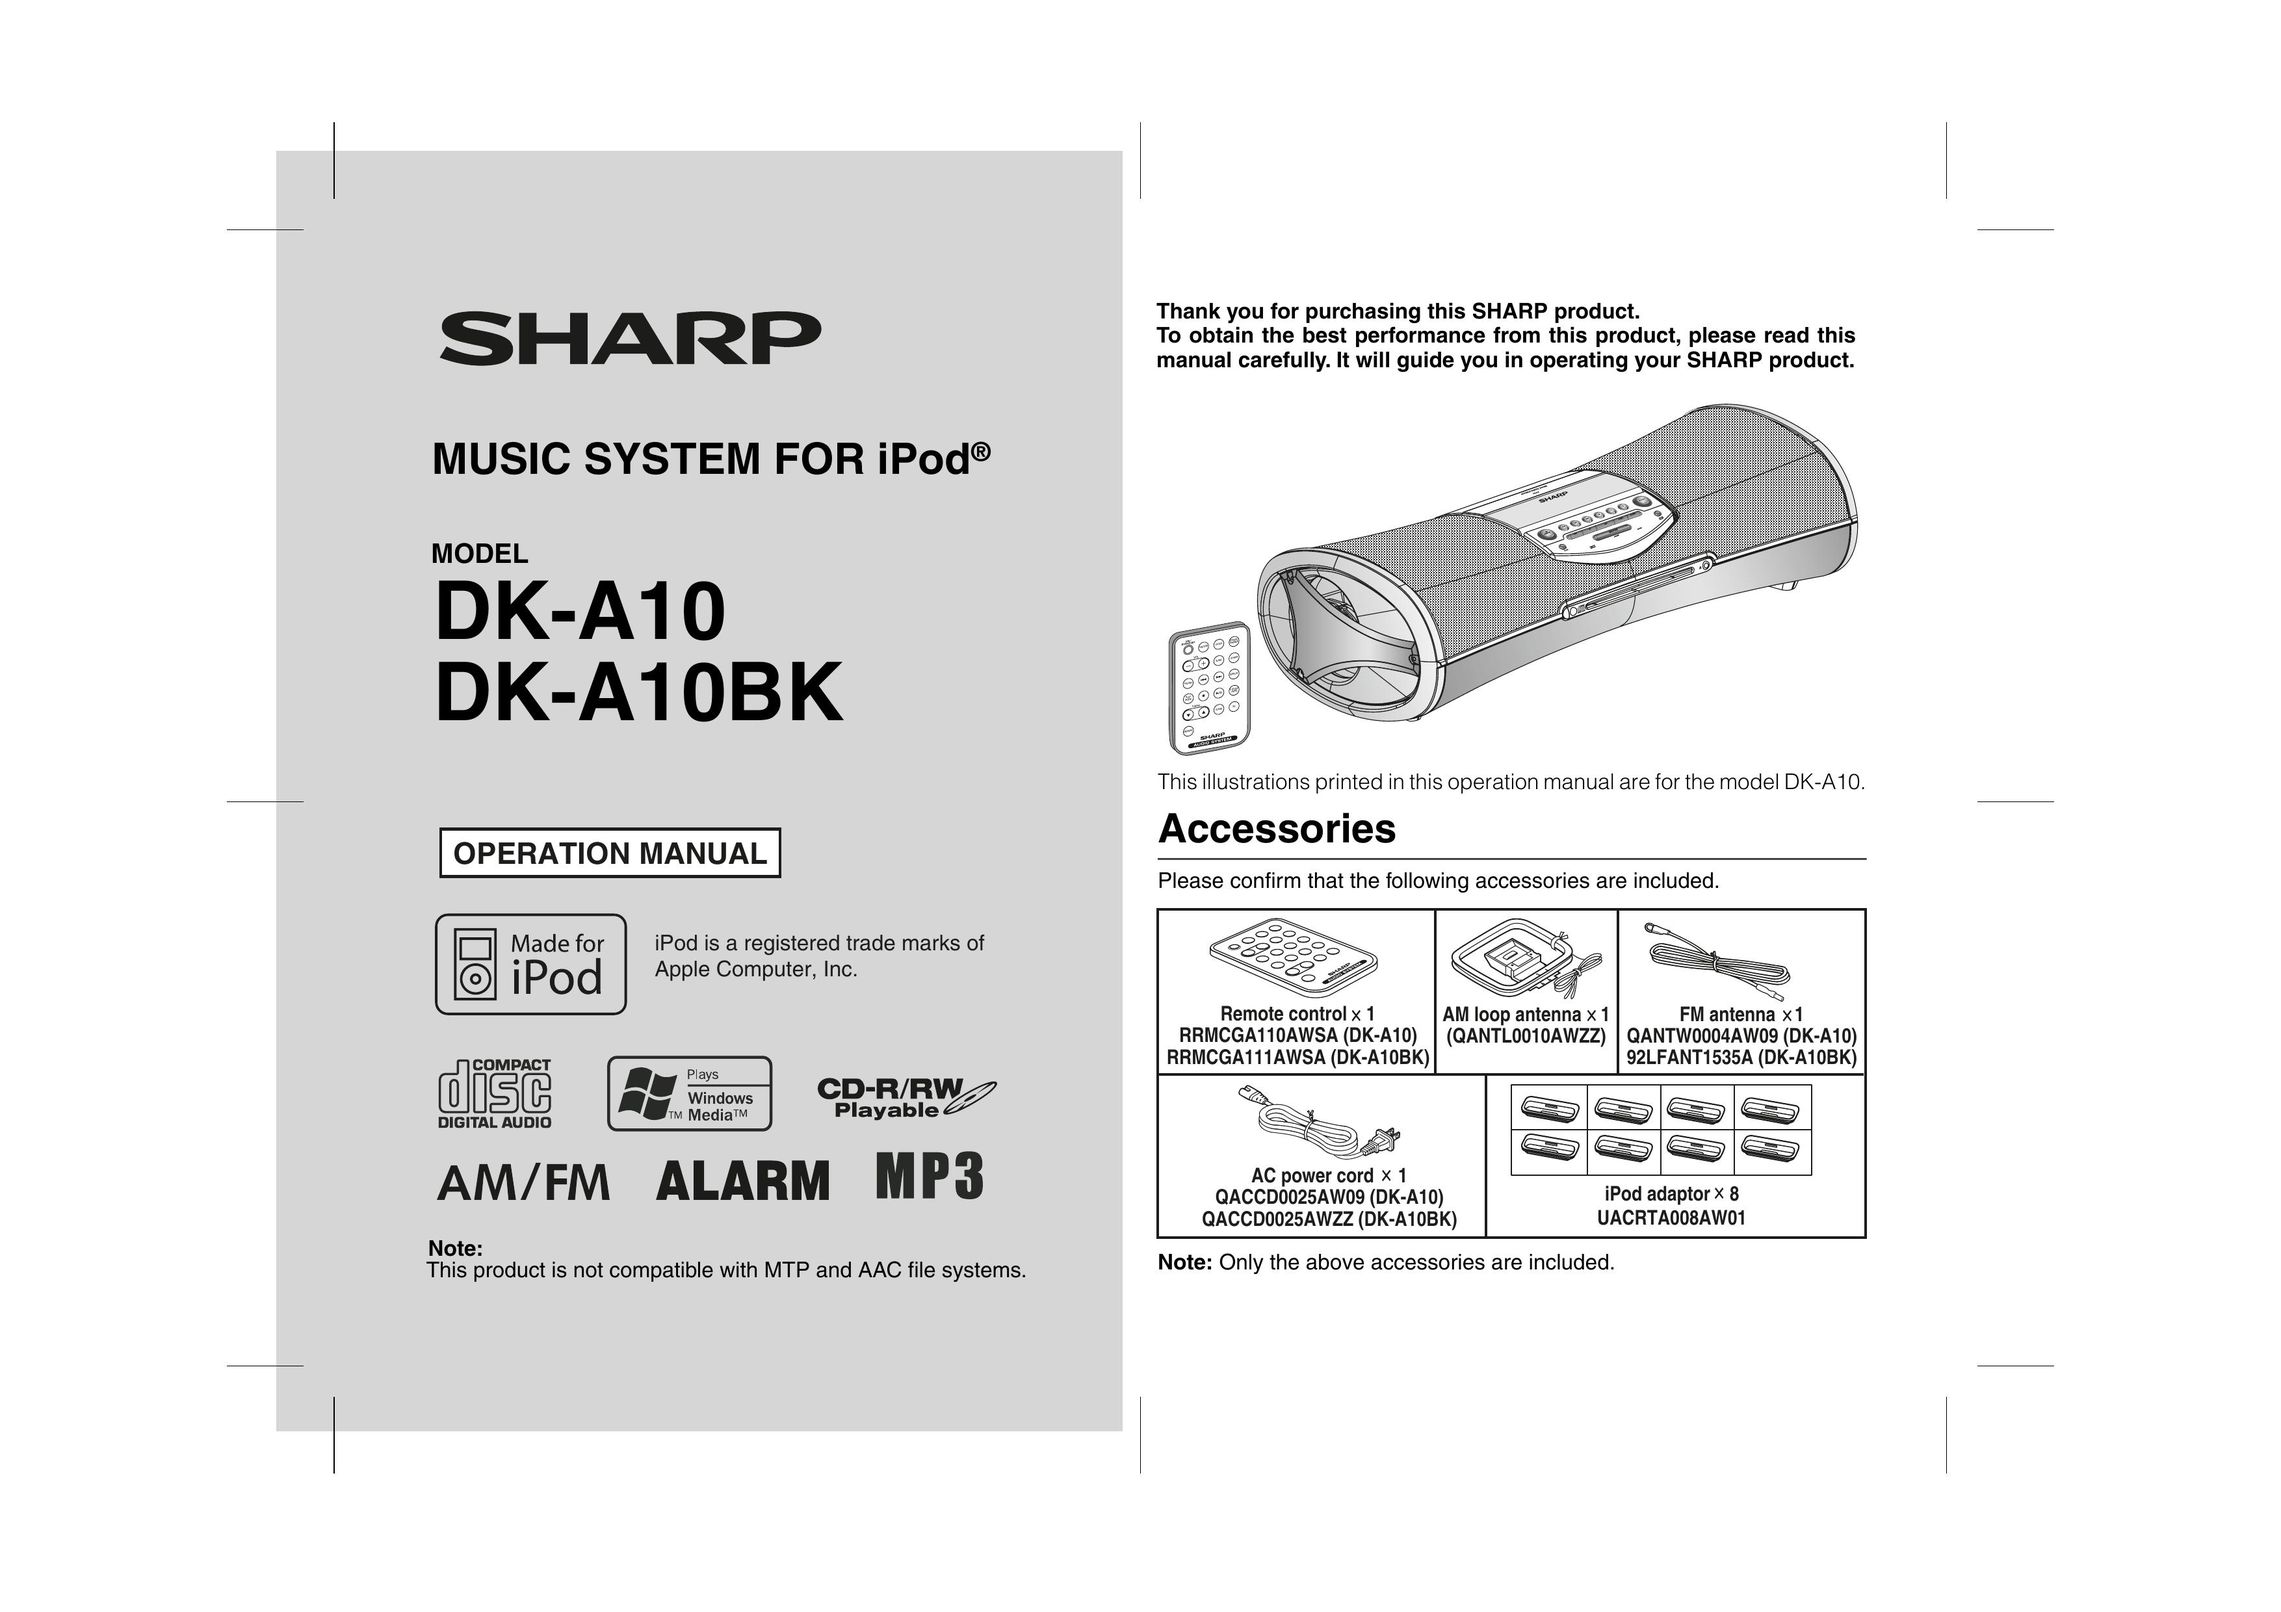 Sharp DK-A10, DK-A10BK MP3 Docking Station User Manual